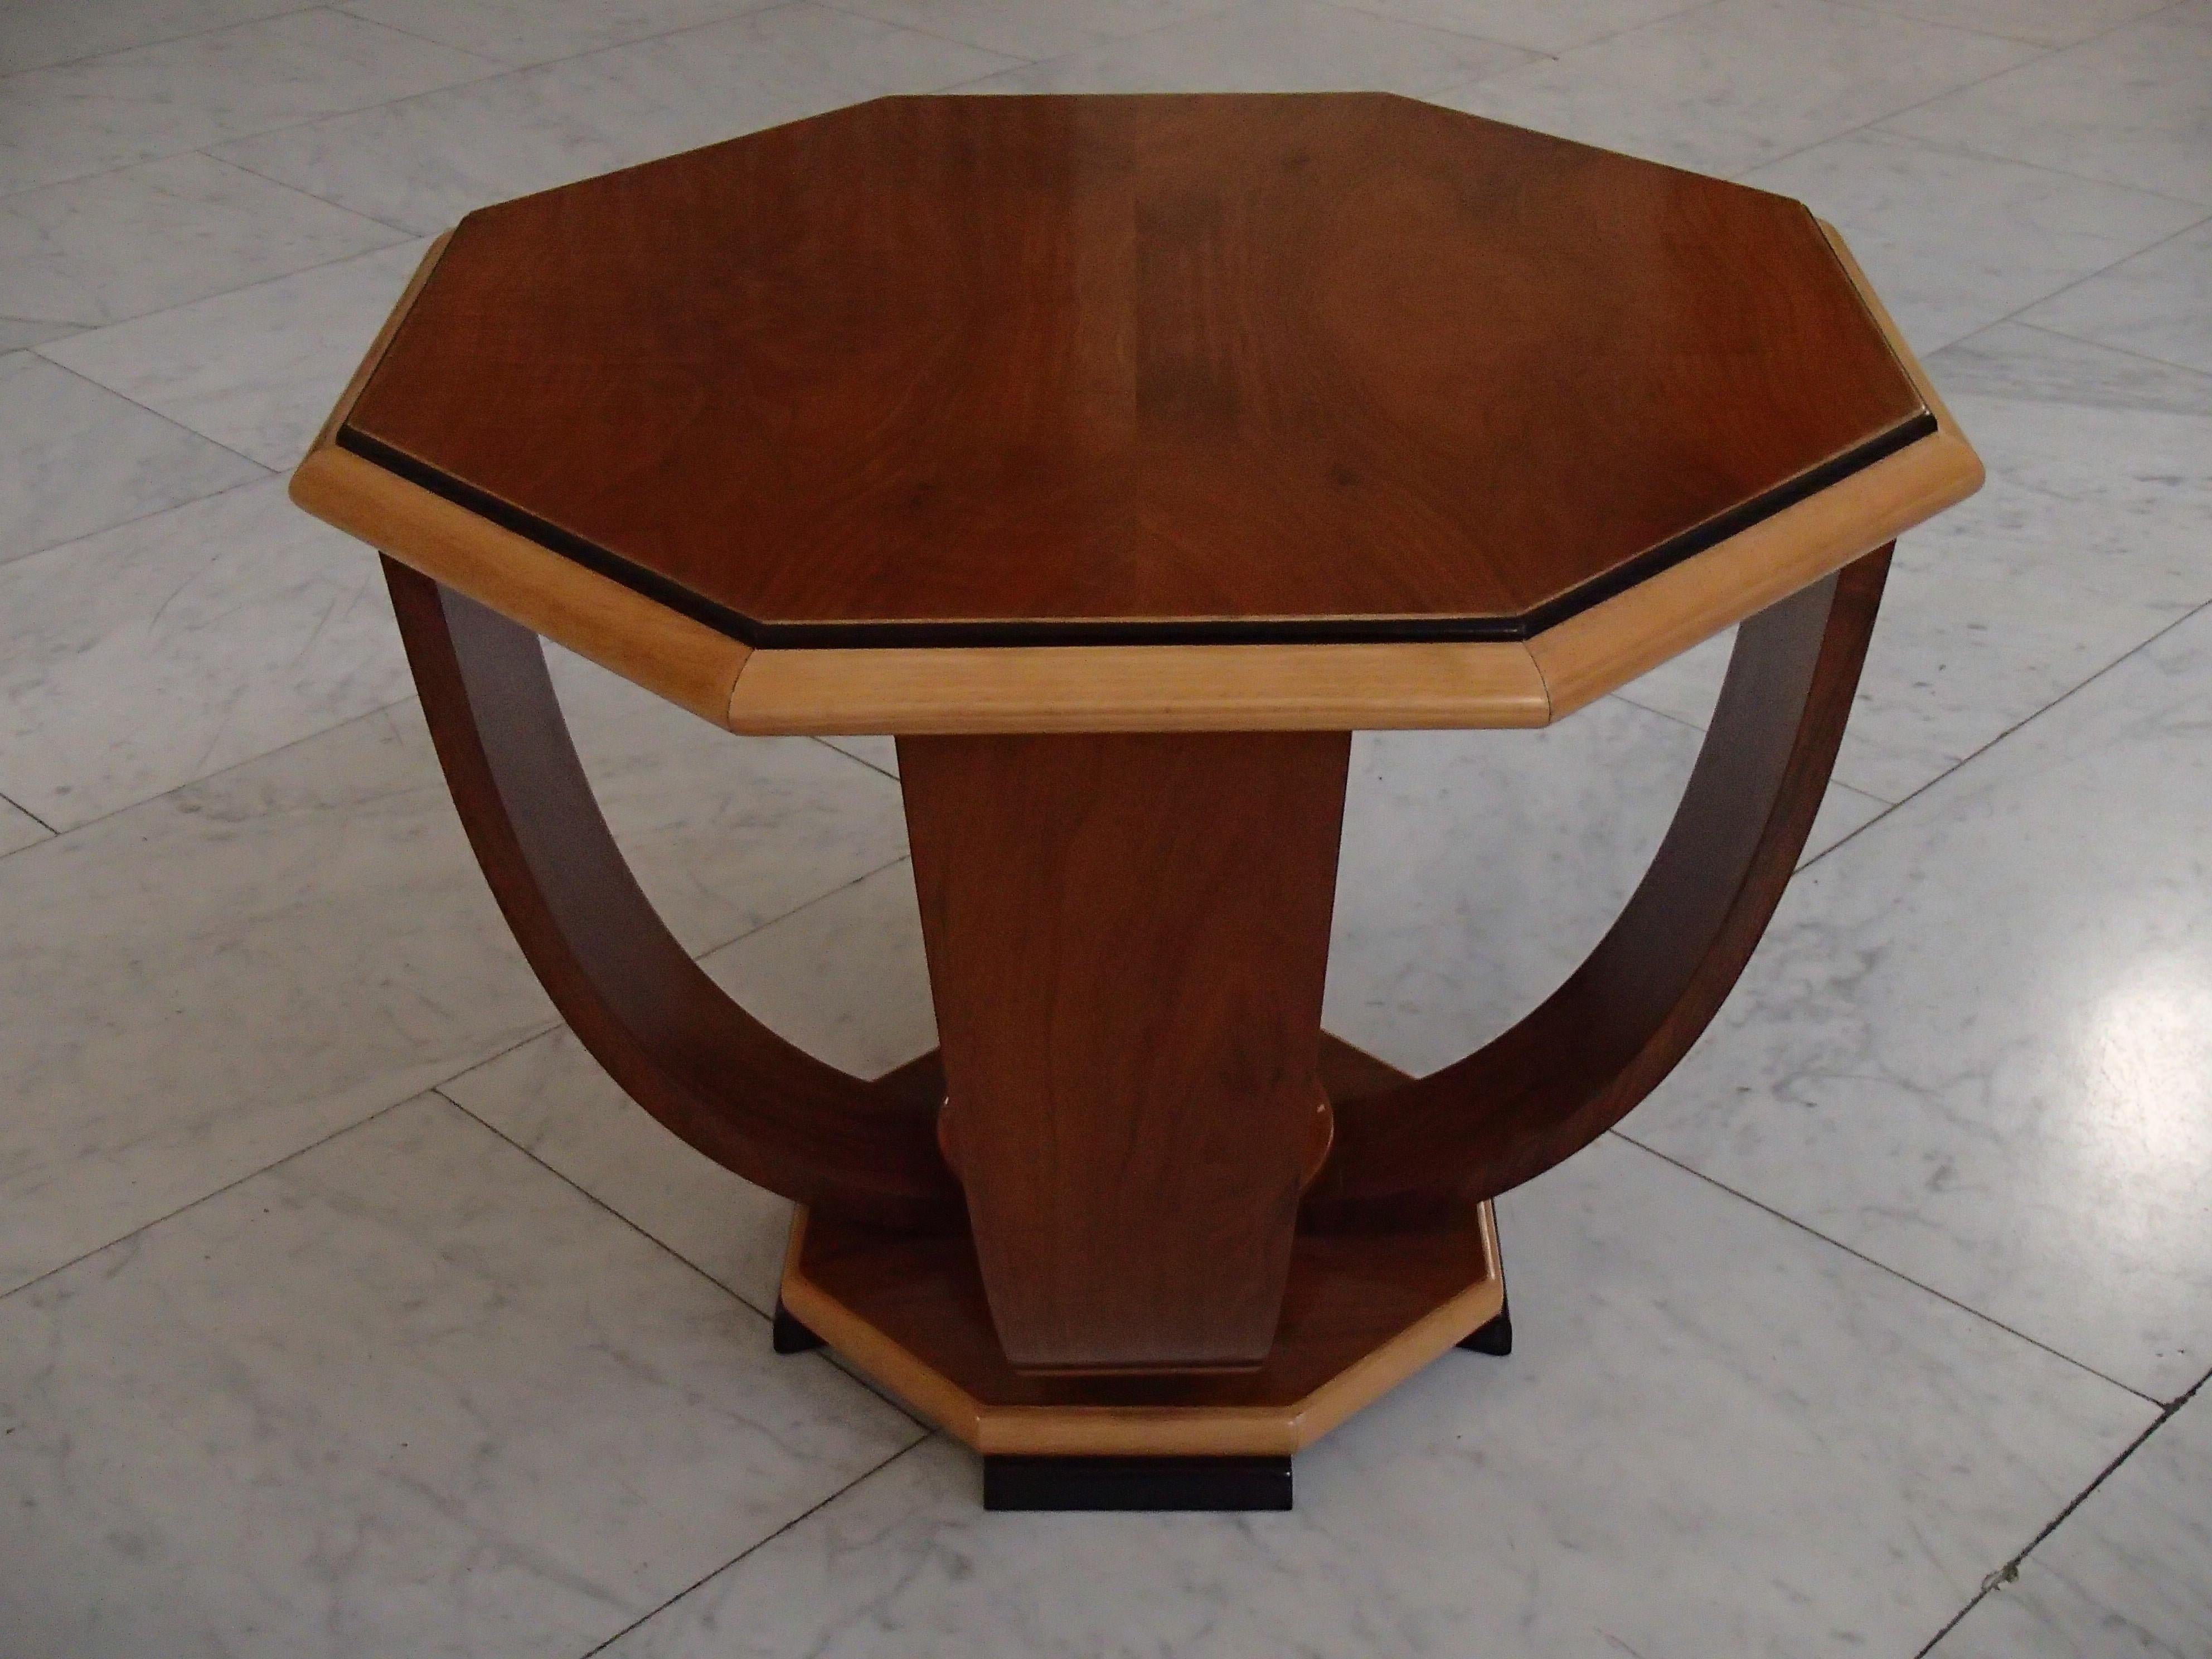 Art Deco octagonal elegant 3 tone table walnut on birch 4 curbed legs.